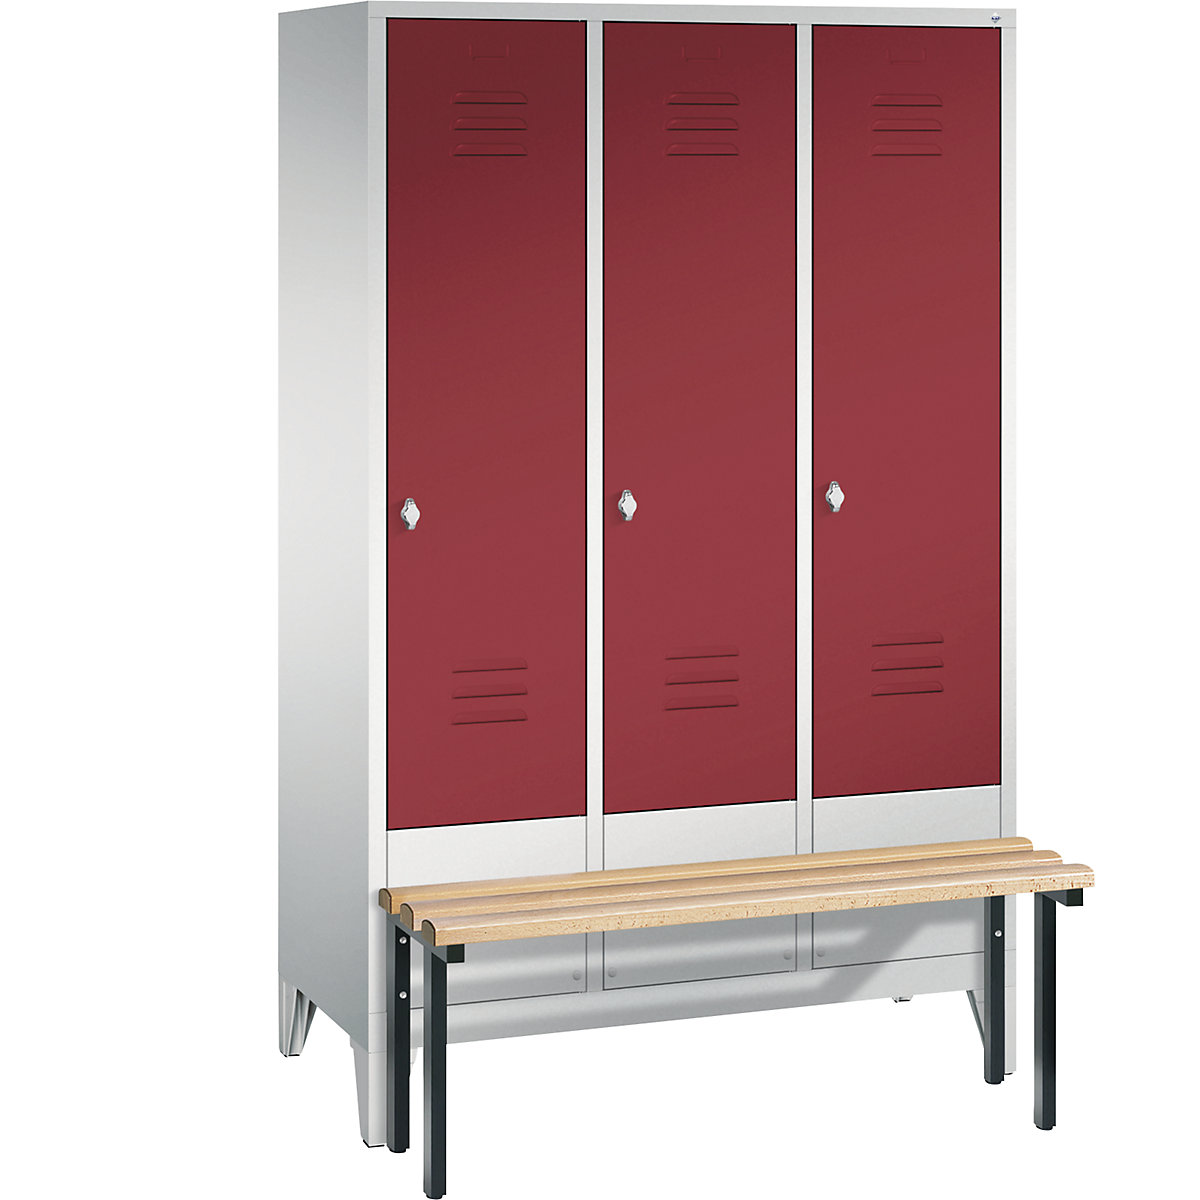 Garderobna omara CLASSIC s klopjo – C+P, 3 predelki, širina 400 mm/predelek, svetlo sive / rubinasto rdeče barve-3